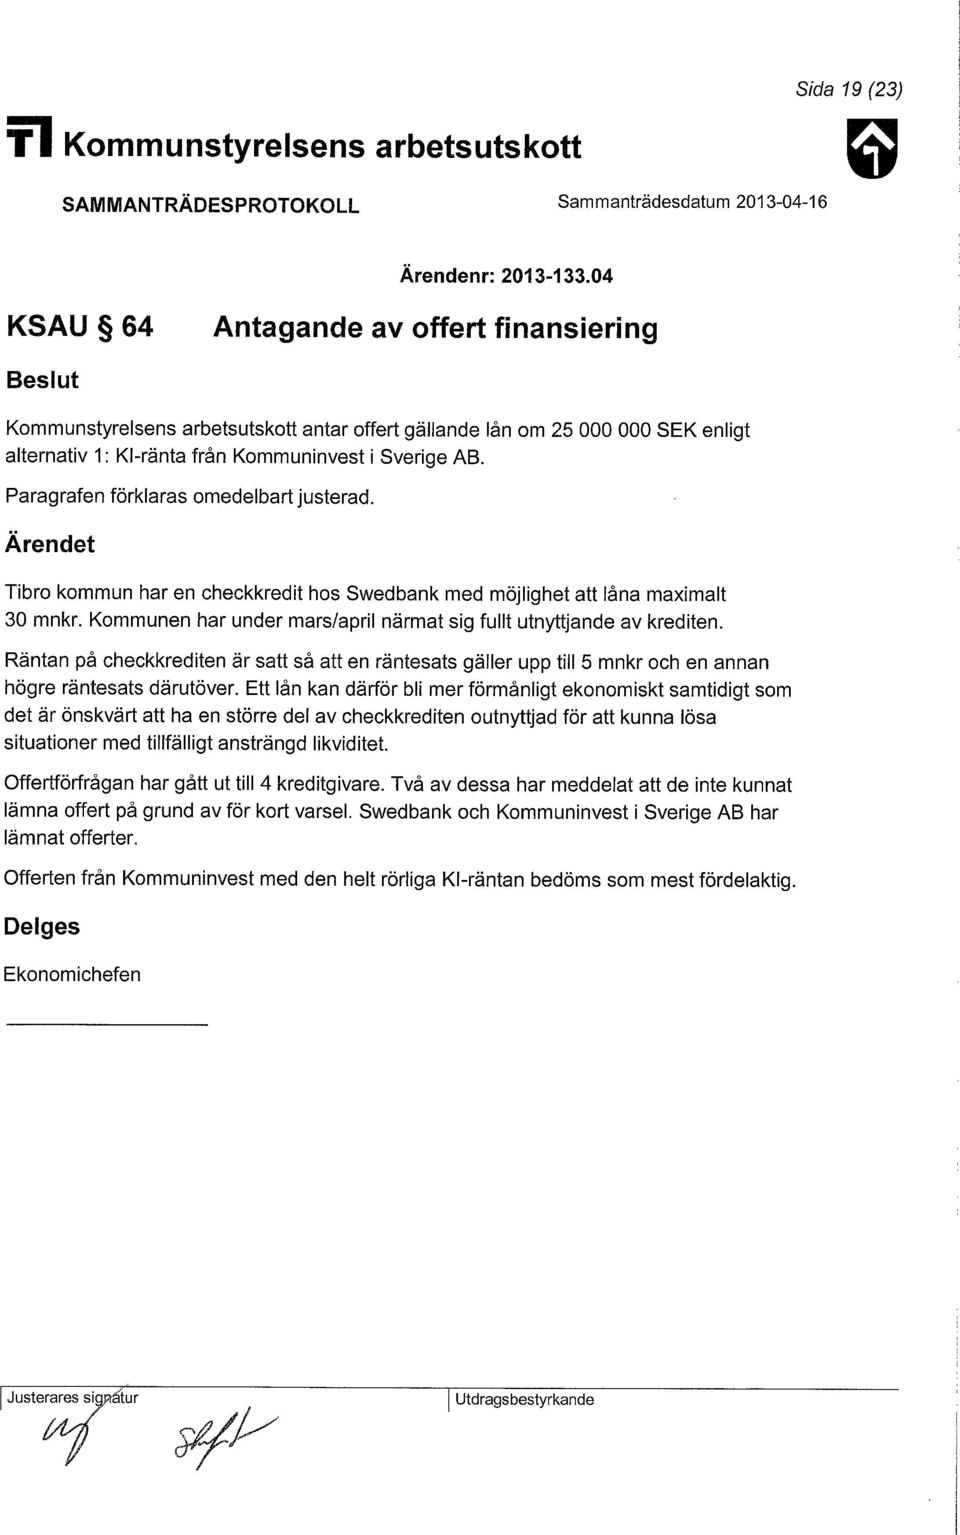 Paragrafen förklaras omedelbart justerad. Tibro kommun har en checkkredit hos Swedbank med möjlighet att låna maximalt 30 mnkr. Kommunen har under mars/april närmat sig fullt utnyttjande av krediten.